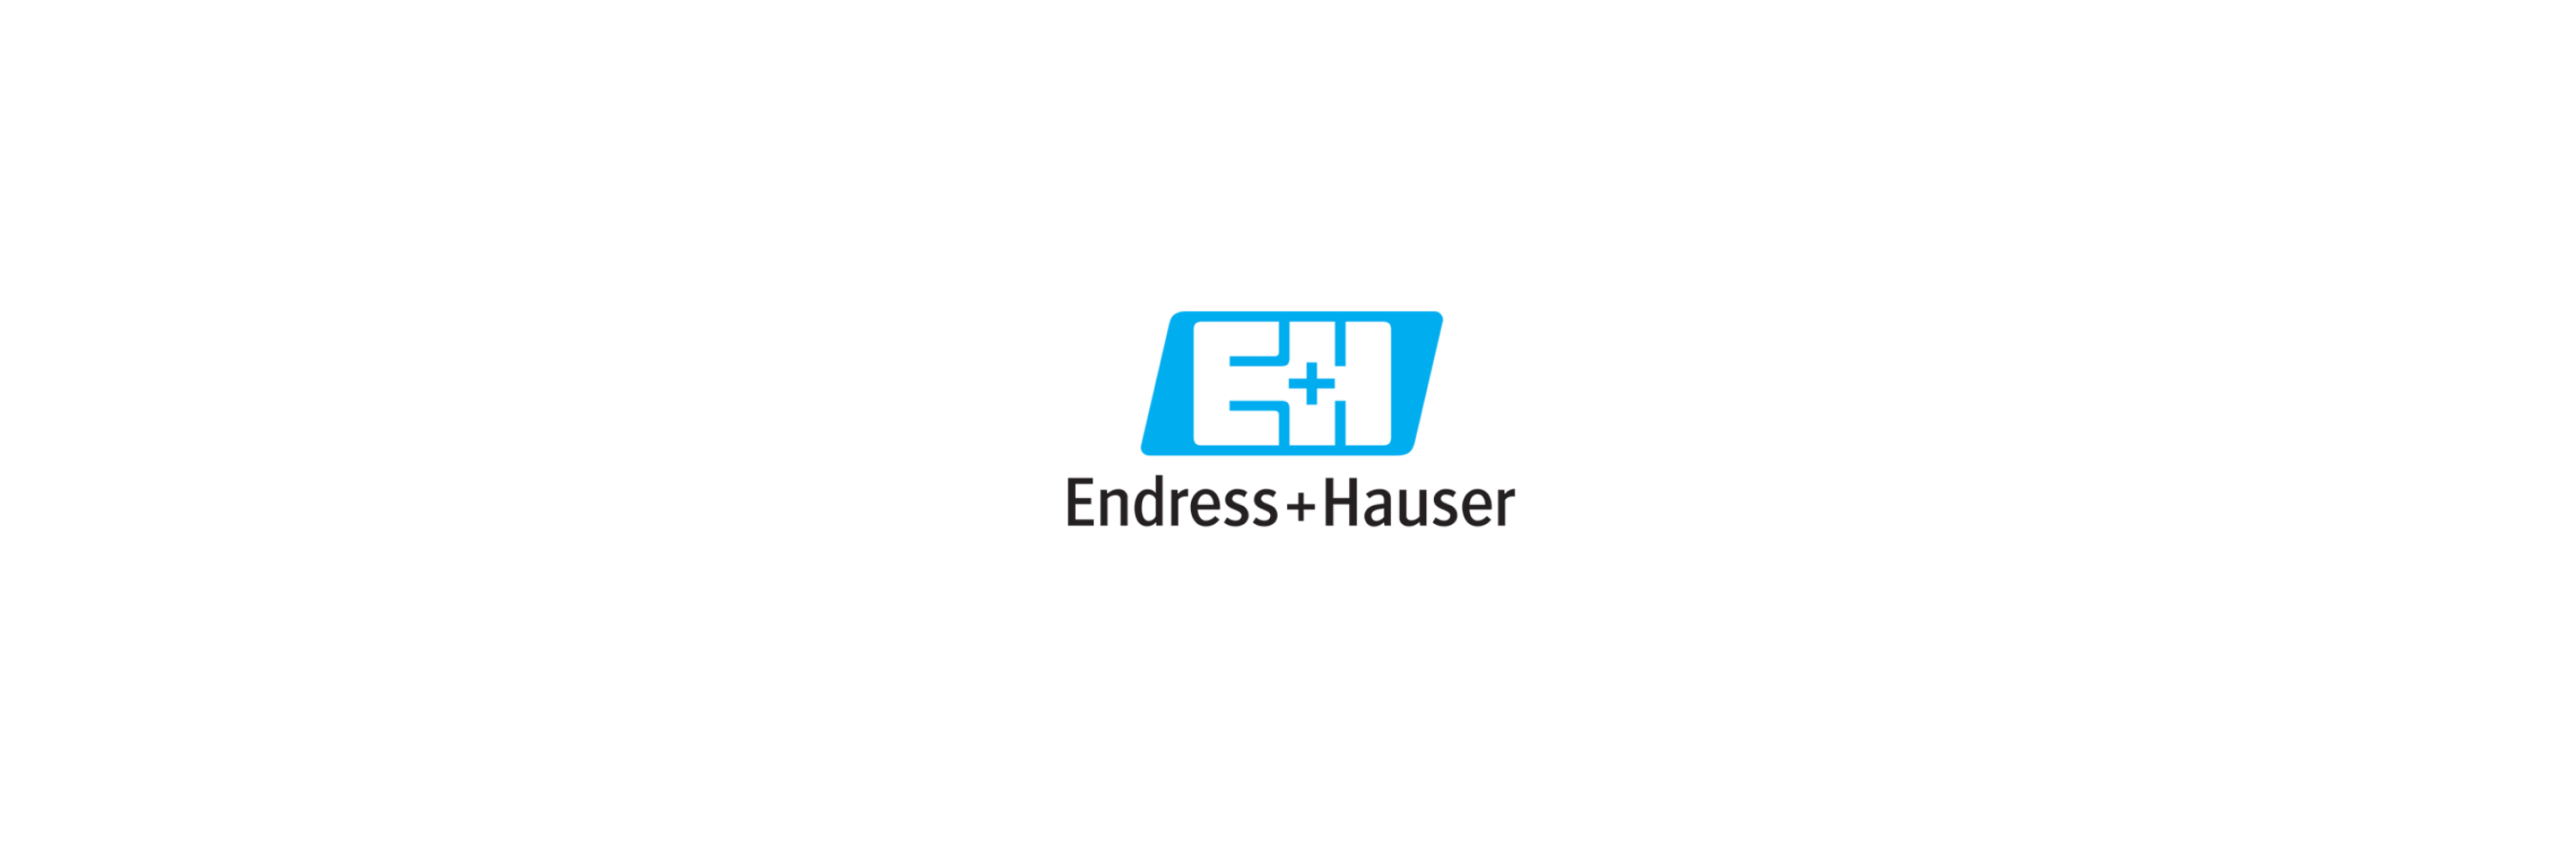 Endress & Hauser - Klenk Maschinenhandel